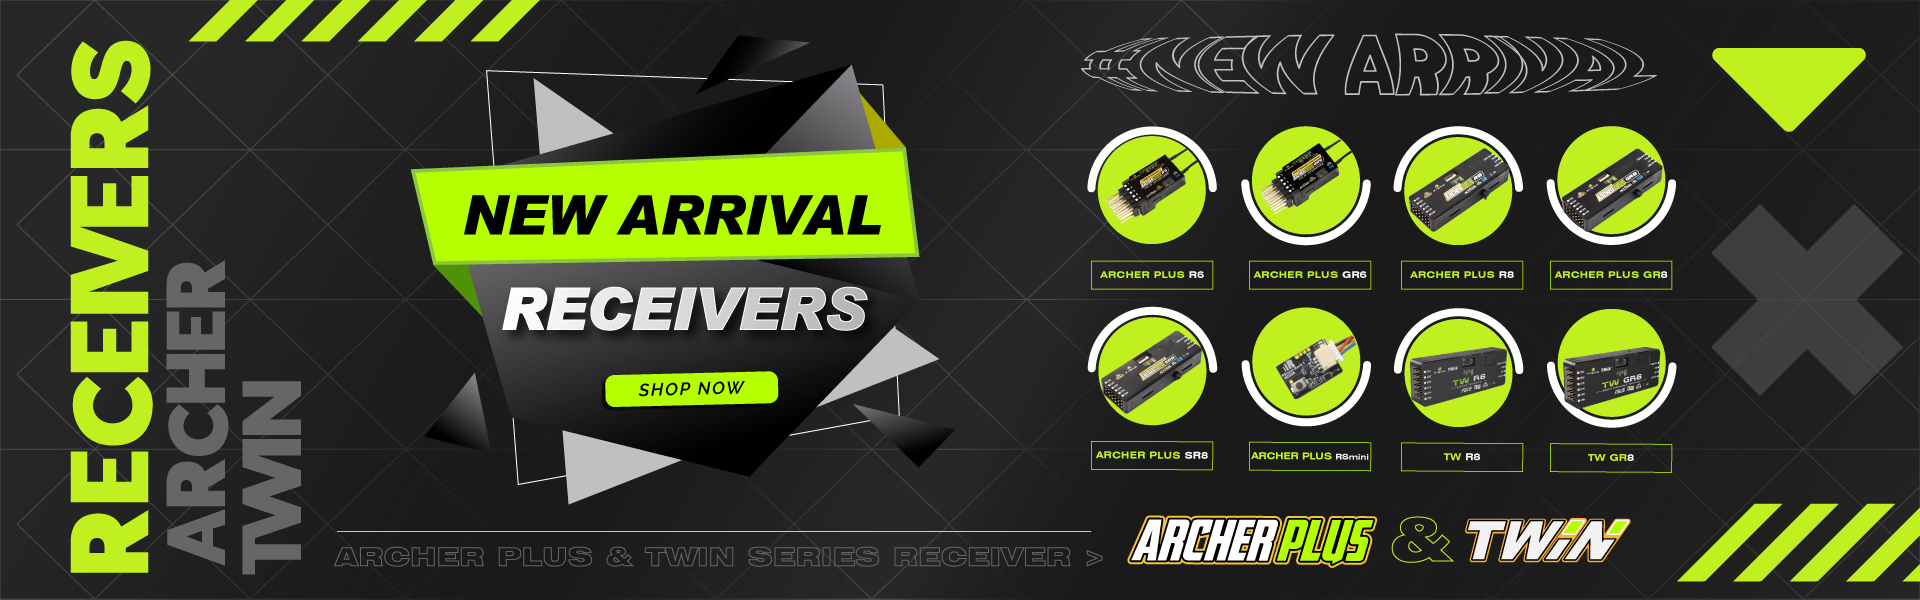 Archer Plus Receivers